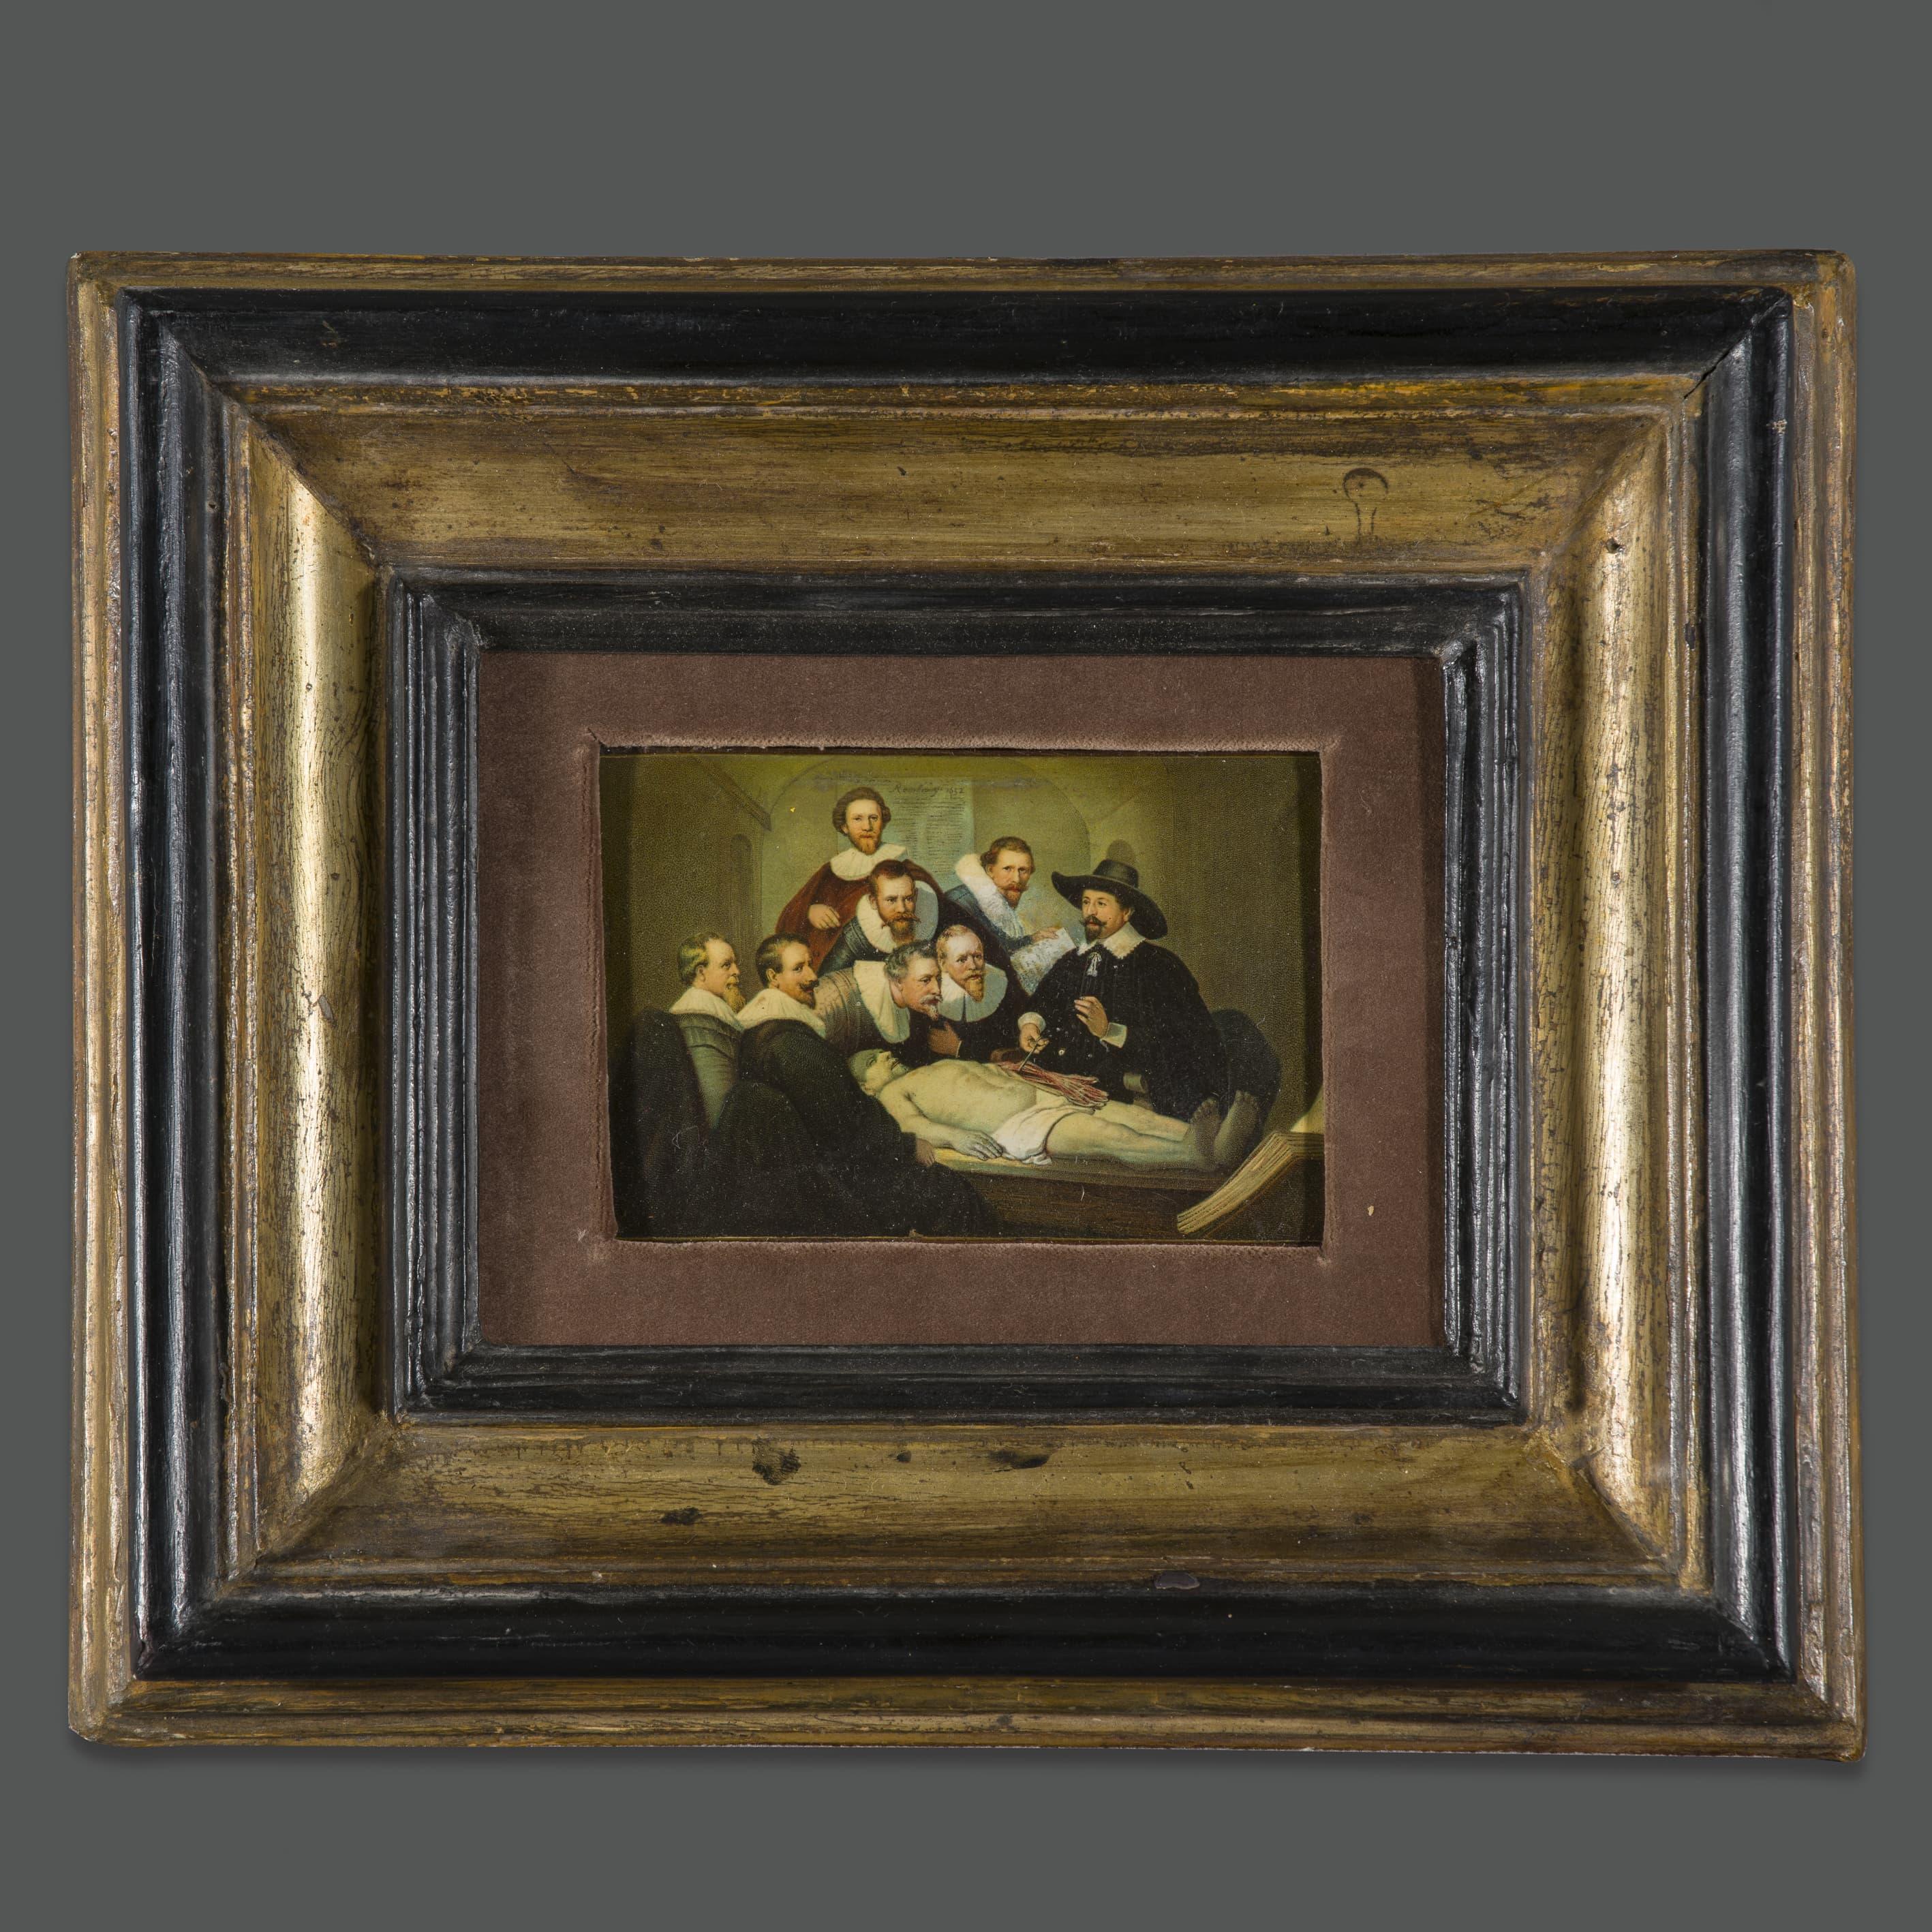 Paire d'importantes peintures à l'huile d'un disciple de Rembrant 
Les deux œuvres représentent deux tableaux célèbres : 